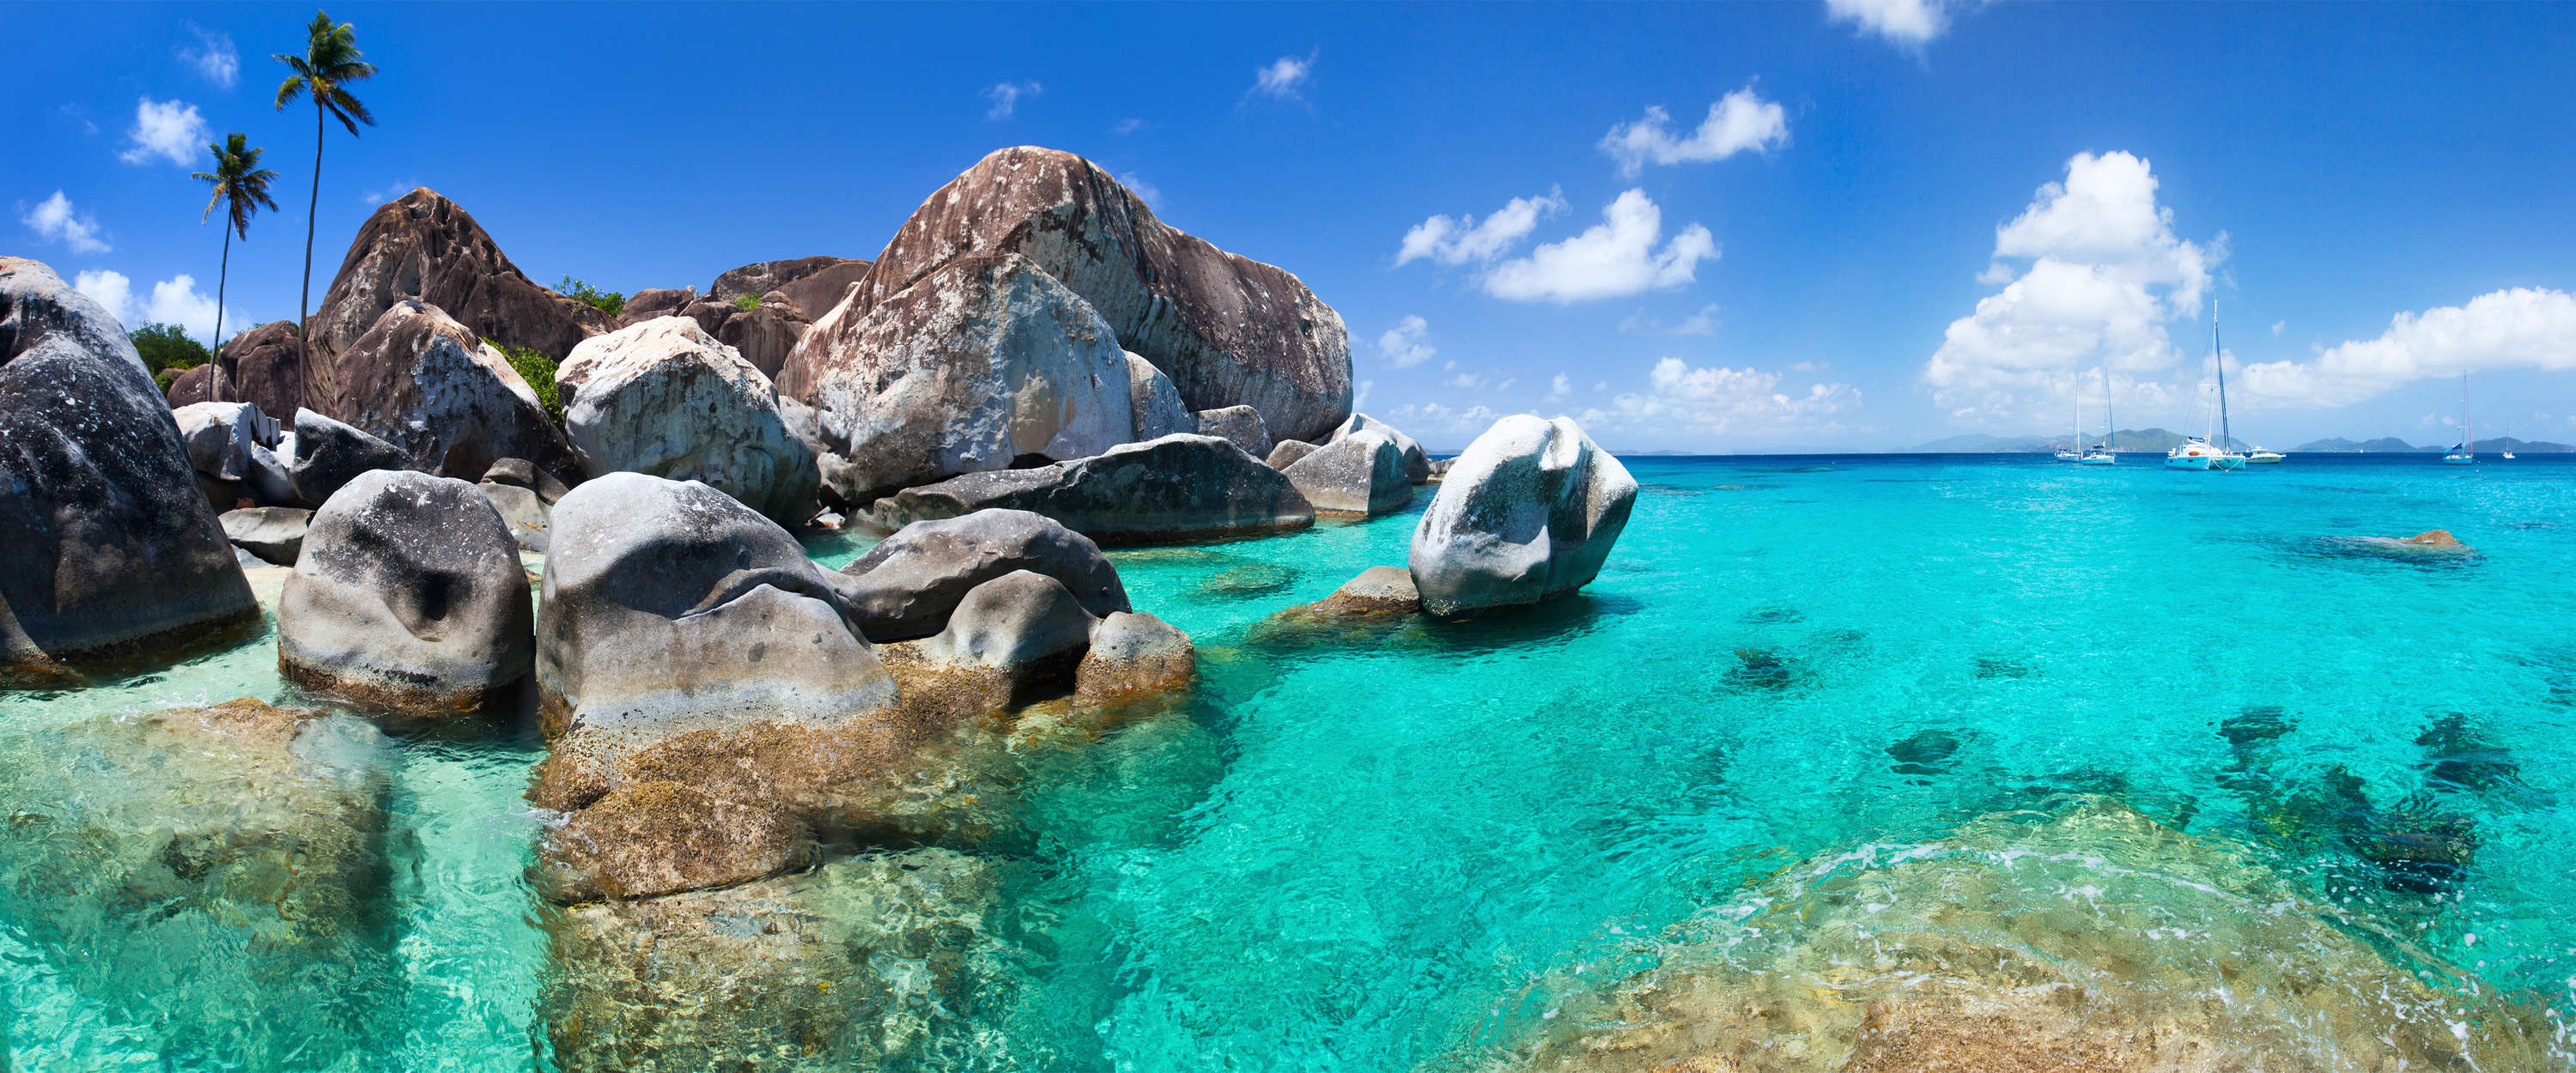             Fotomurali Seychelles acqua turchese, rocce e palme
        